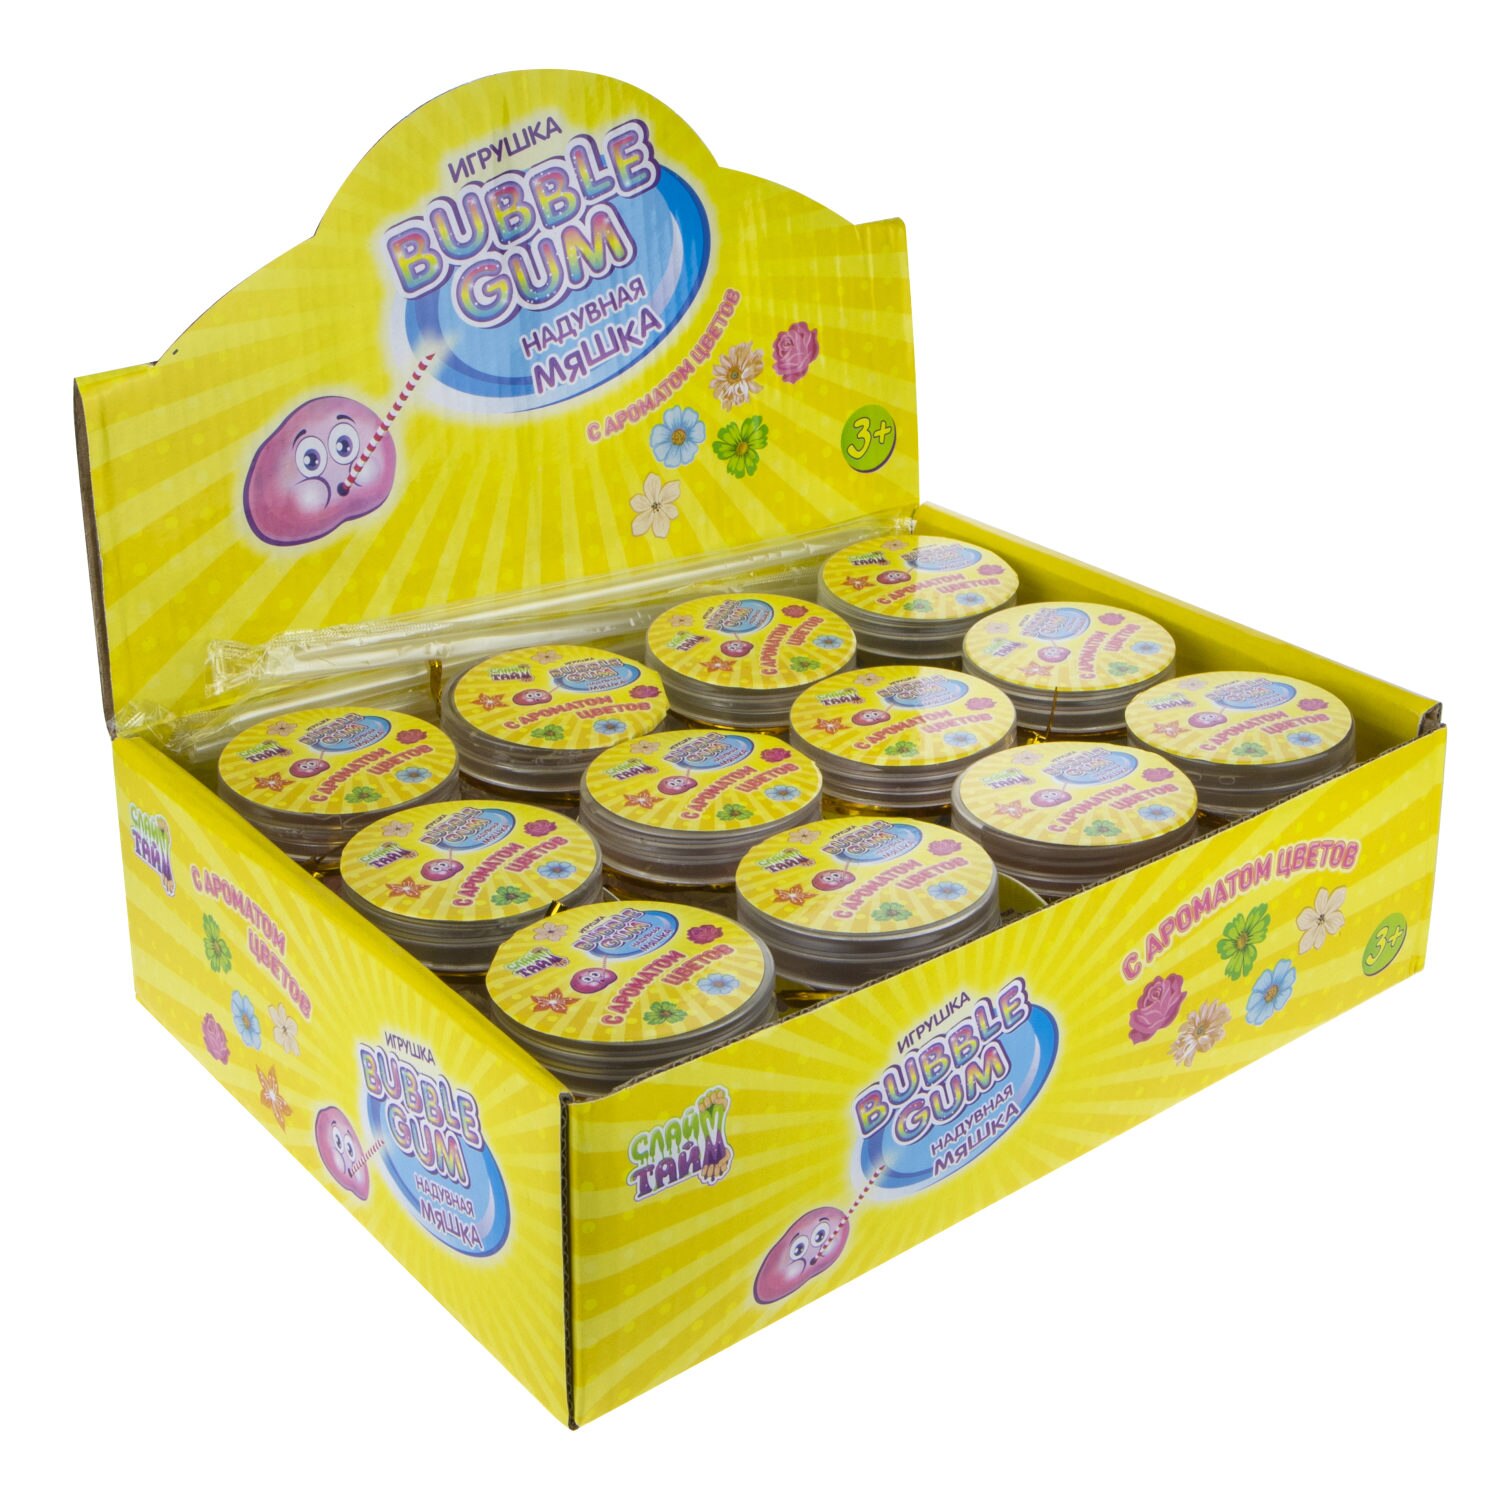 Набор Слайм Тайм - Надувная мяшка Bubble Gum с ароматом цветов, 4 аромата   